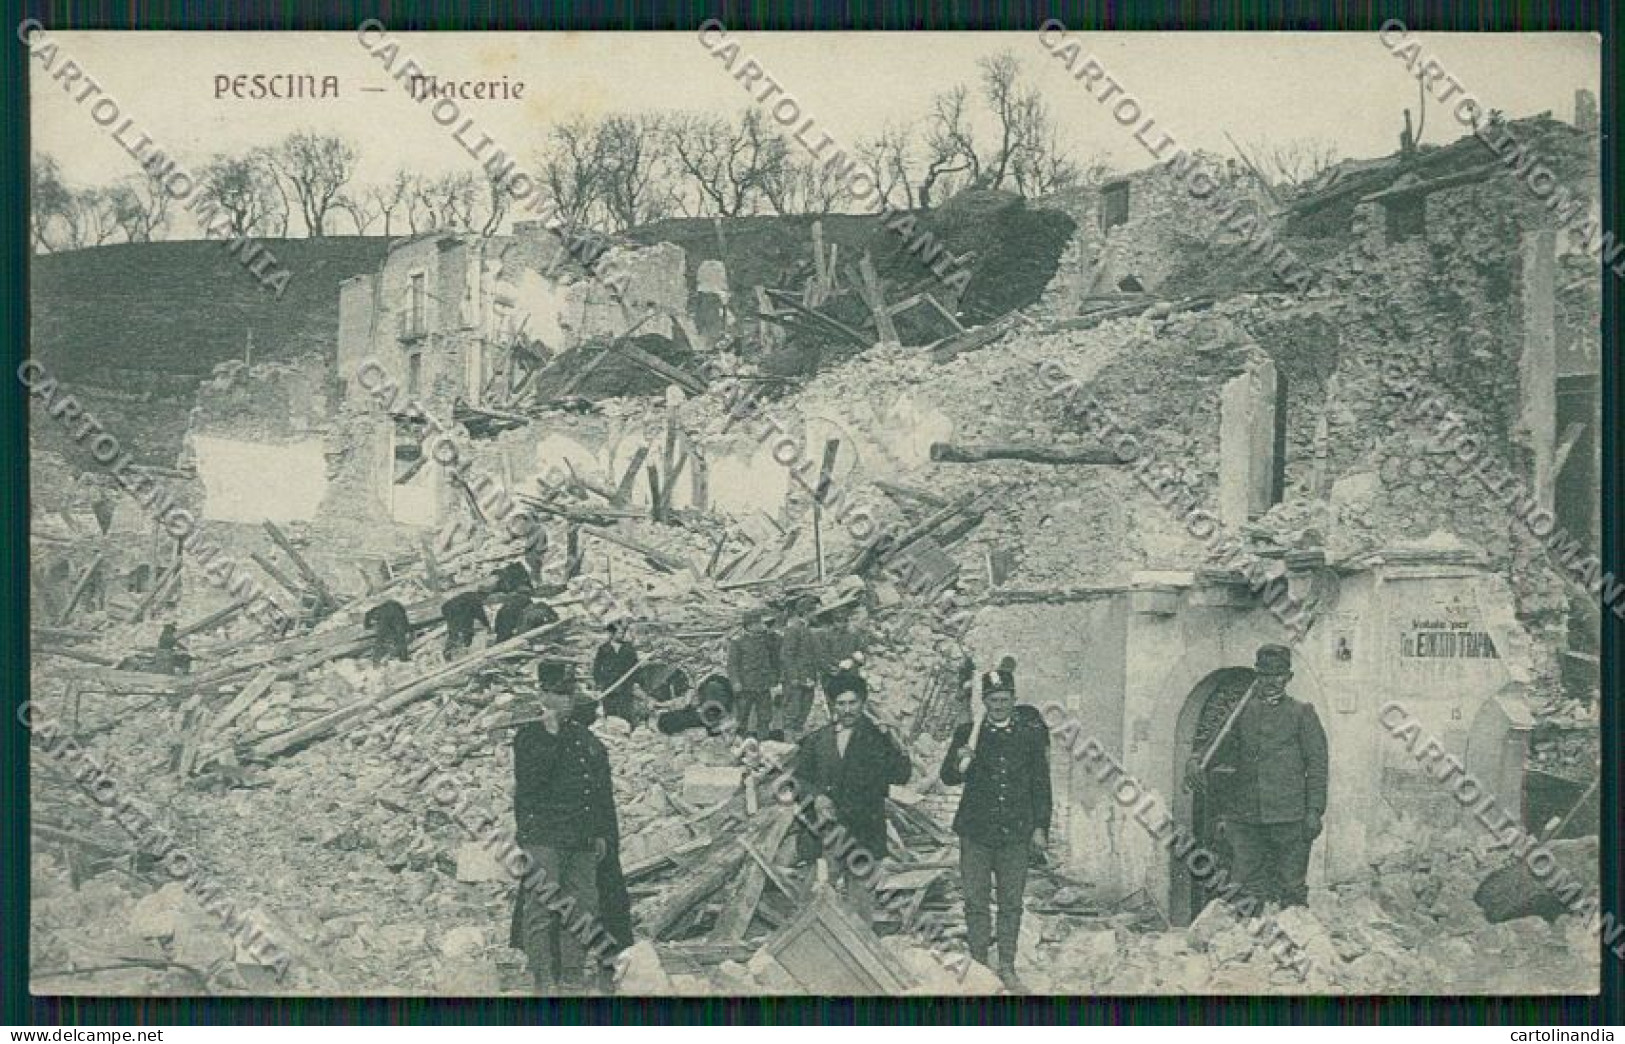 L'Aquila Pescina Terremoto Militari Cartolina QQ3991 - L'Aquila